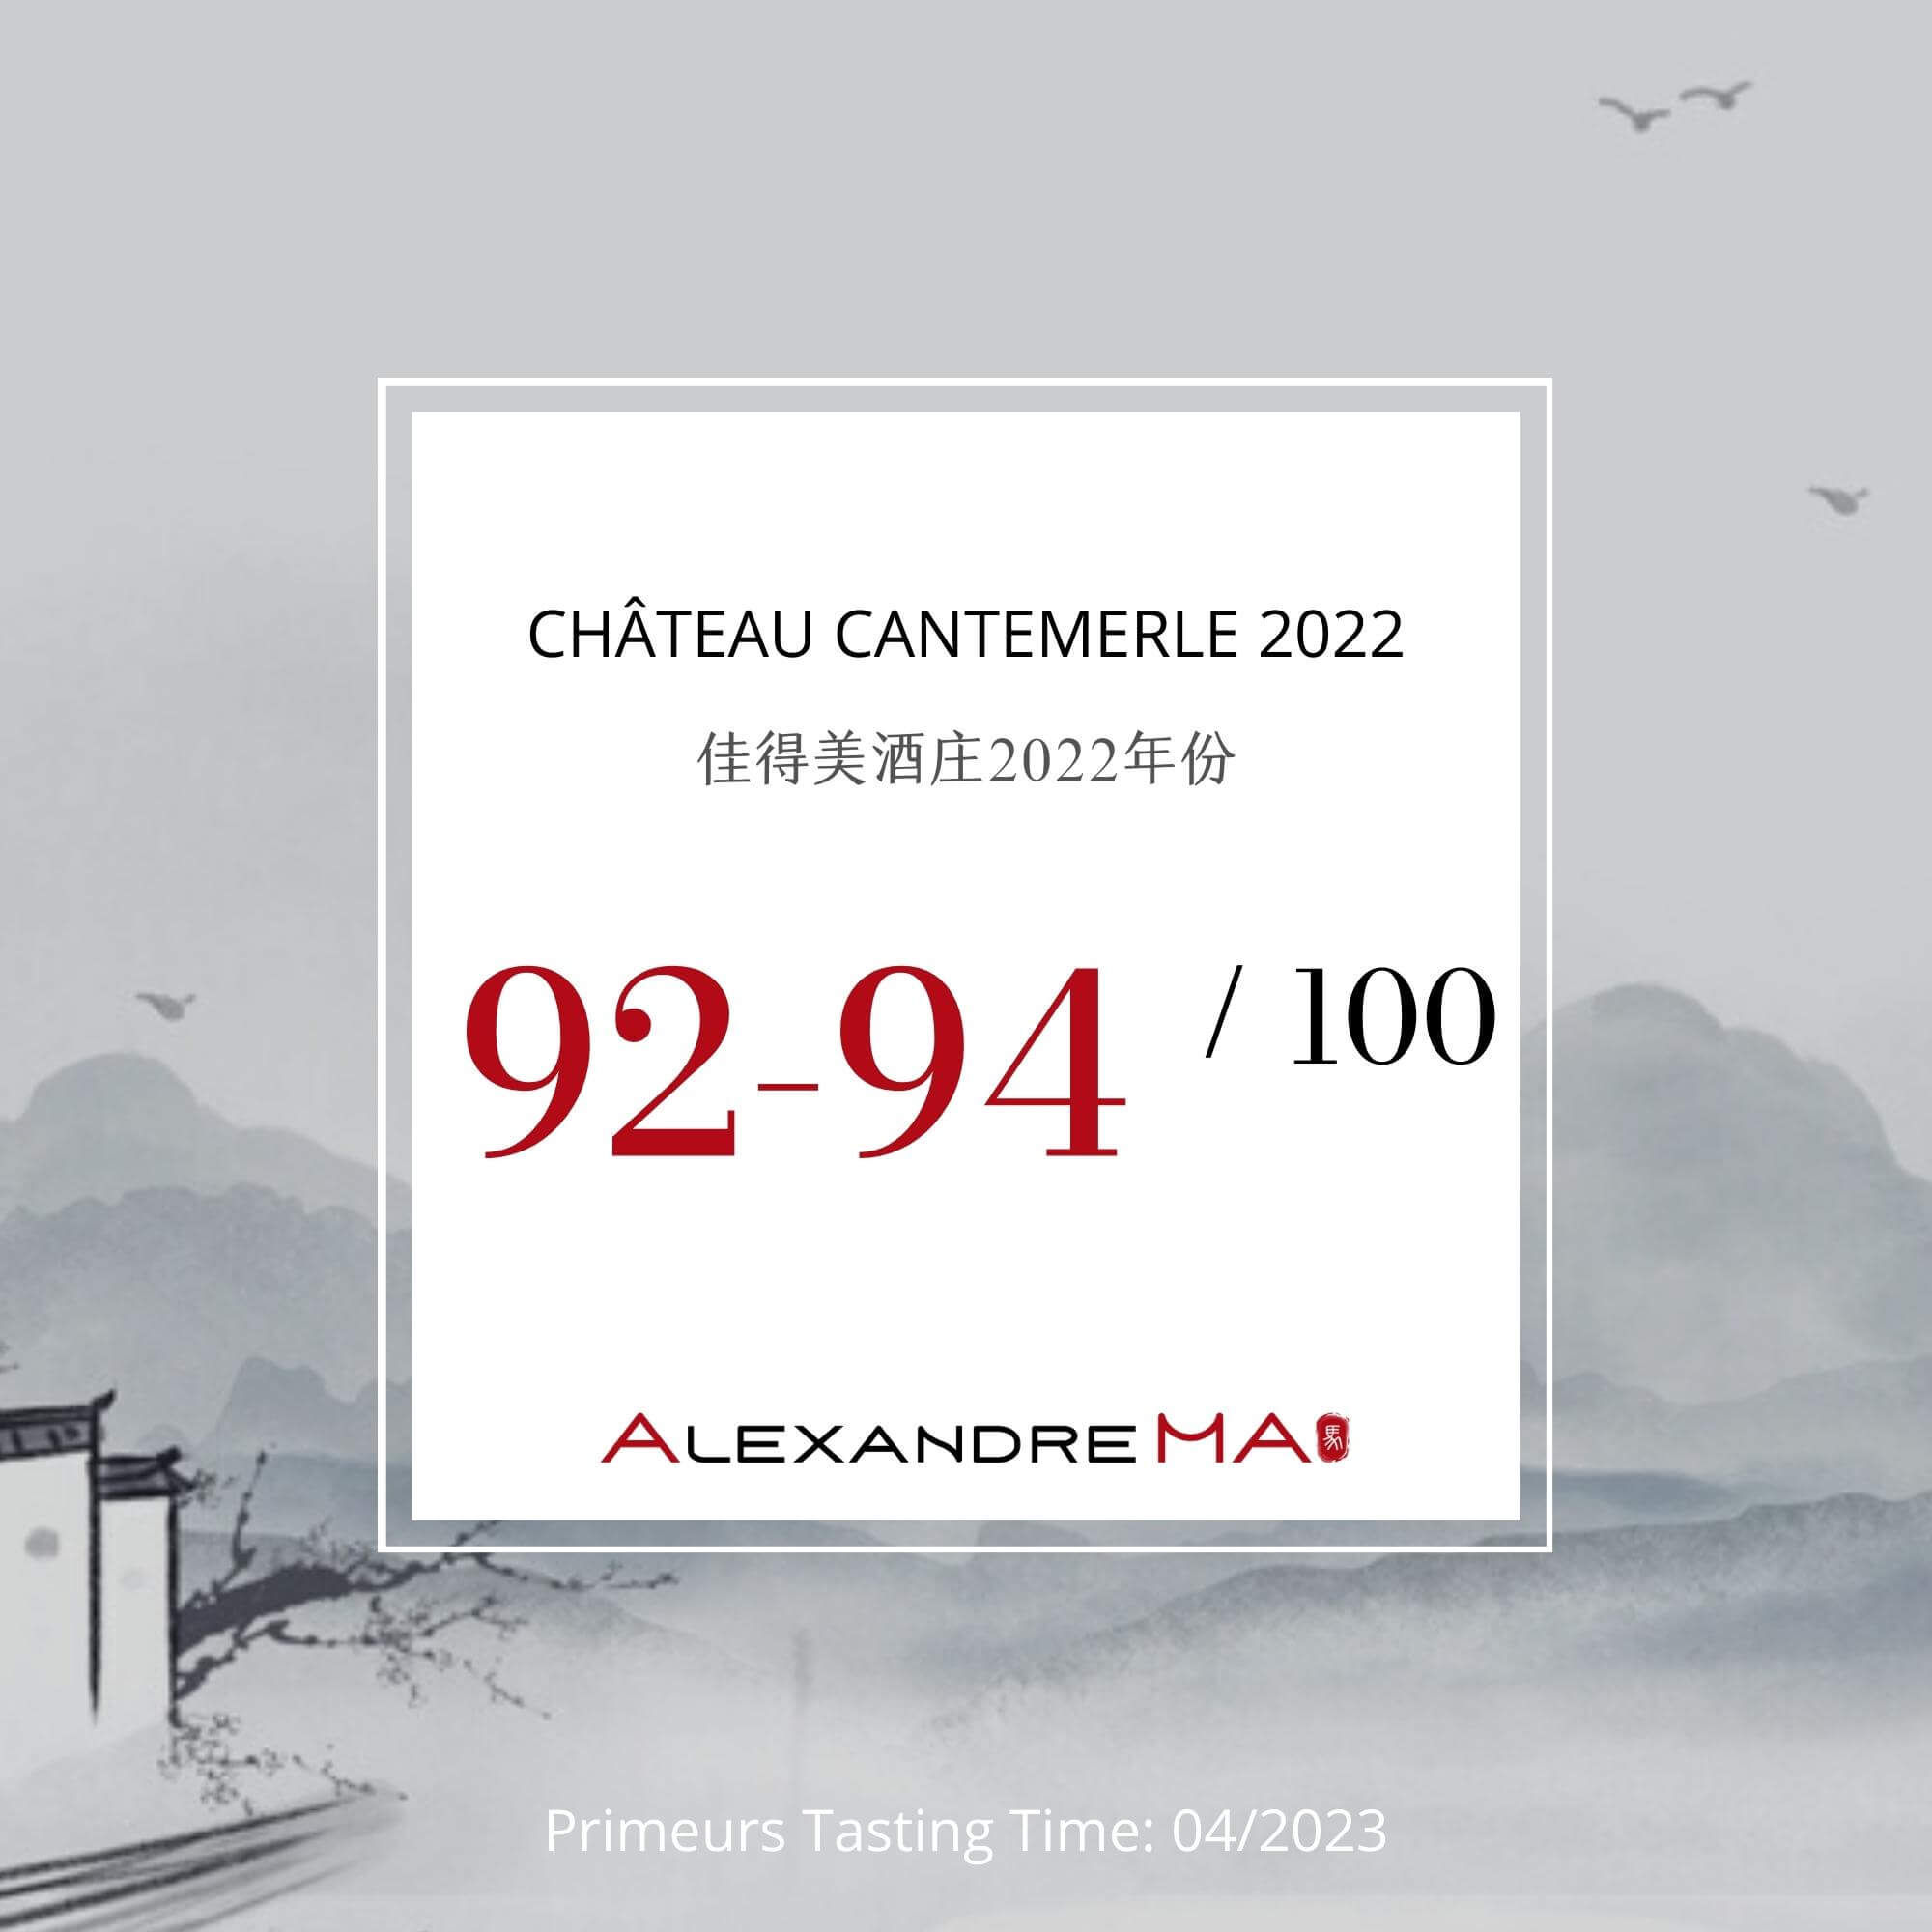 Château Cantemerle 2022 Primeurs 佳得美酒庄 - Alexandre Ma